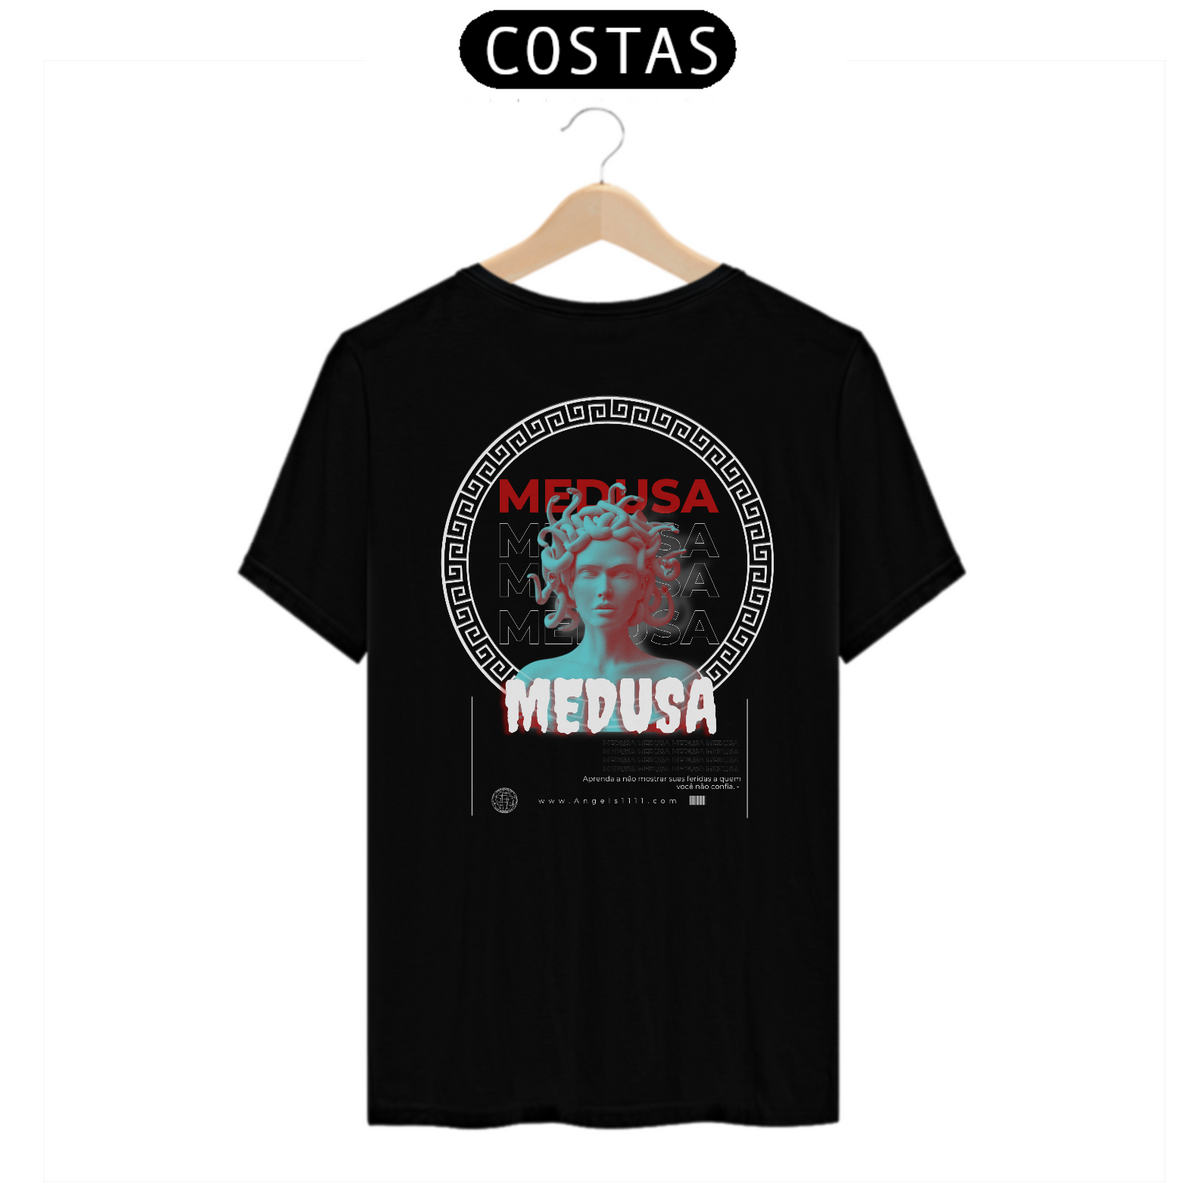 Nome do produto: T-shirt Medusa ( arte nas costas) - Angels 11:11